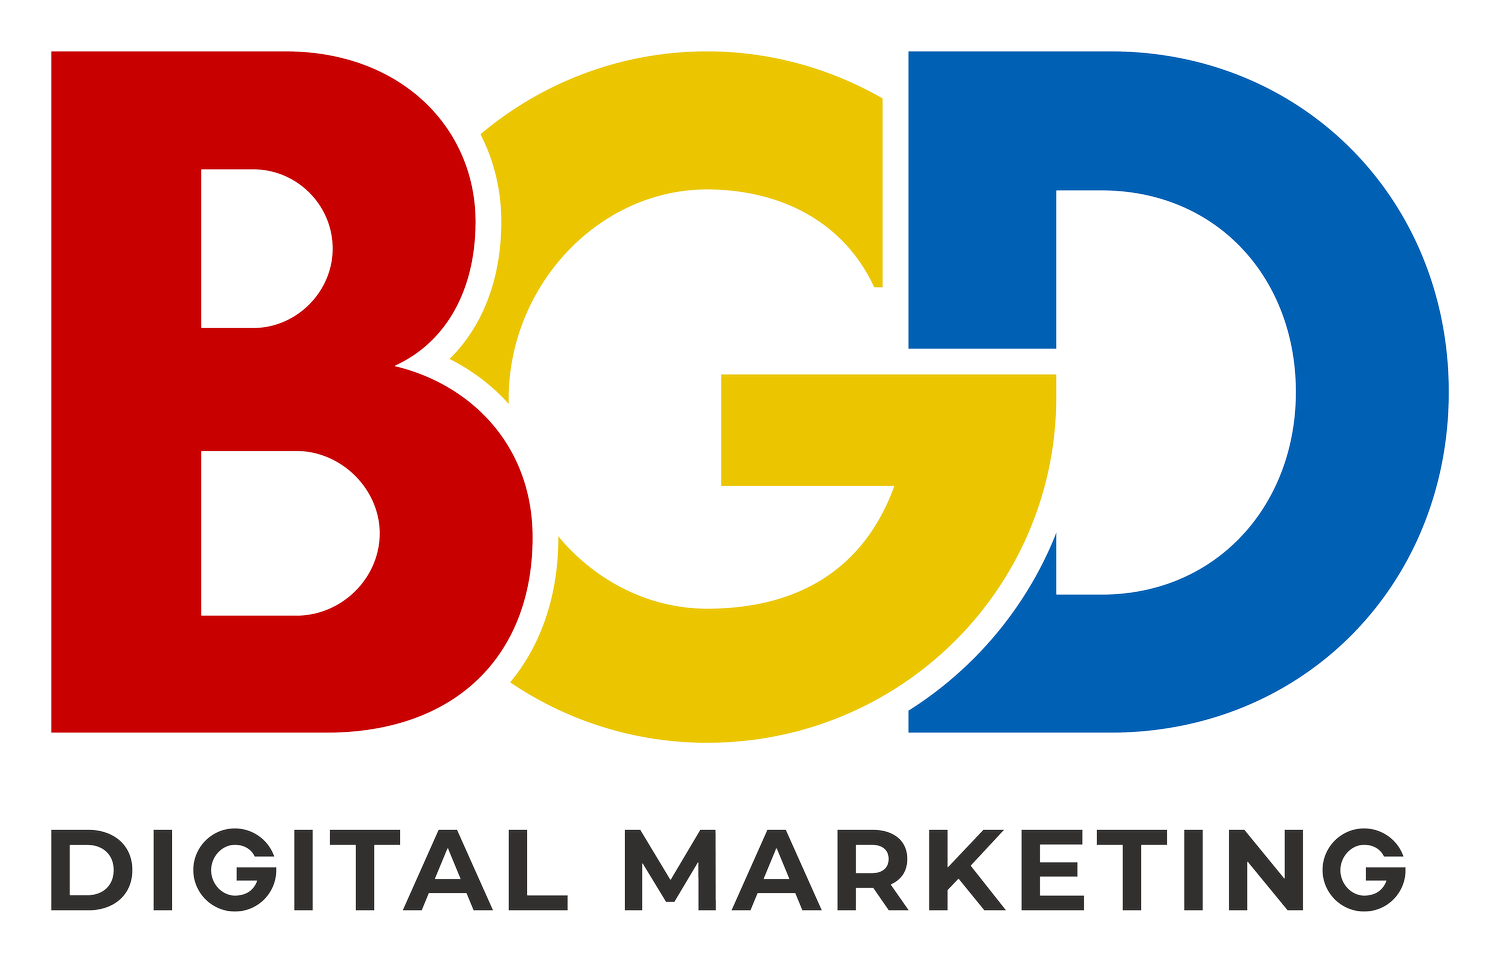 BGD Digital Marketing